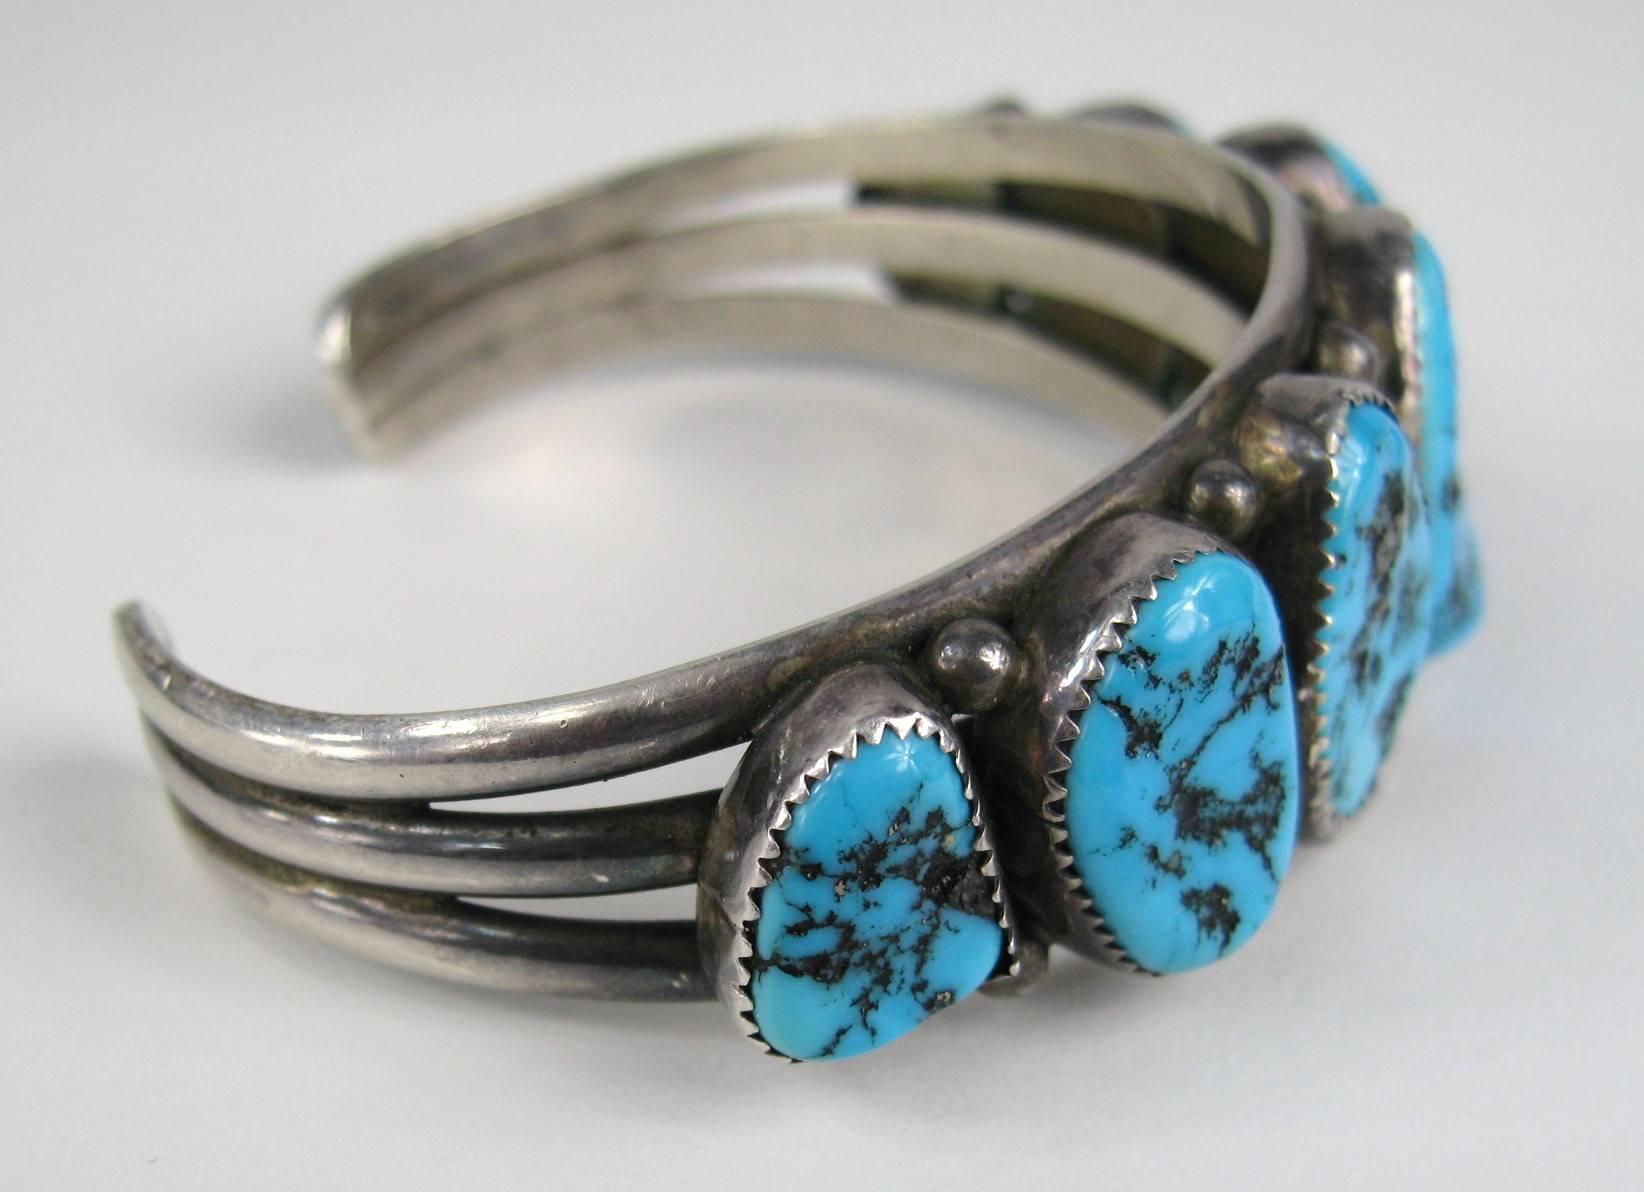 Bracelet artisanal en argent sterling de la Belle au bois dormant Navajo. le bracelet est composé de 3 anneaux et de 7 pierres de turquoise serties de façon graduelle. Il peut être porté aussi bien par un homme que par une femme. Il mesure 1 pouce